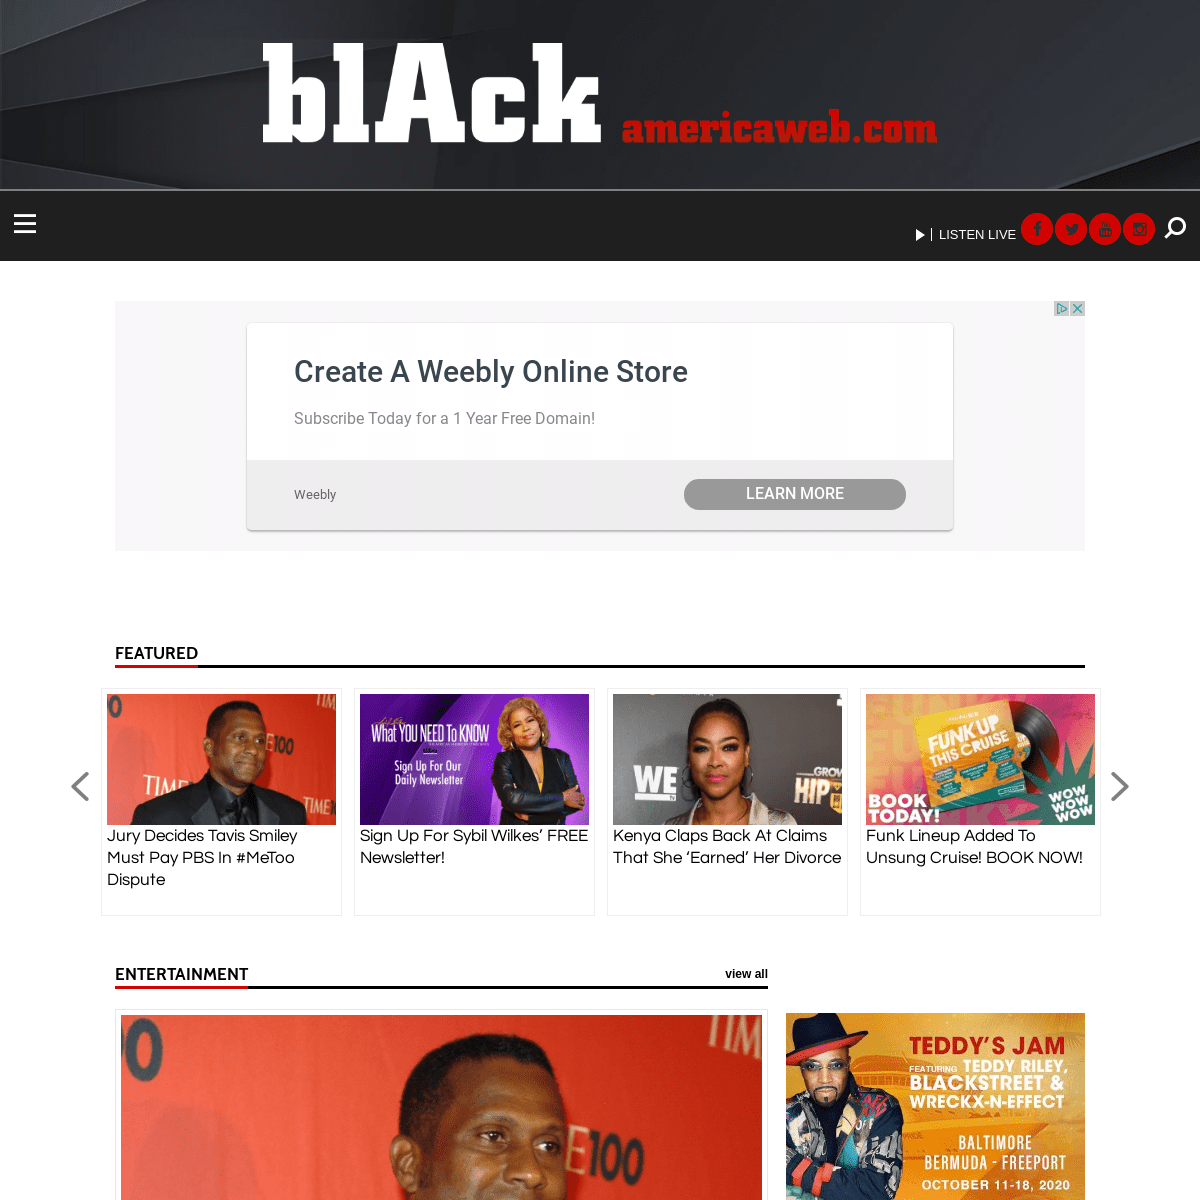 A complete backup of blackamericaweb.com